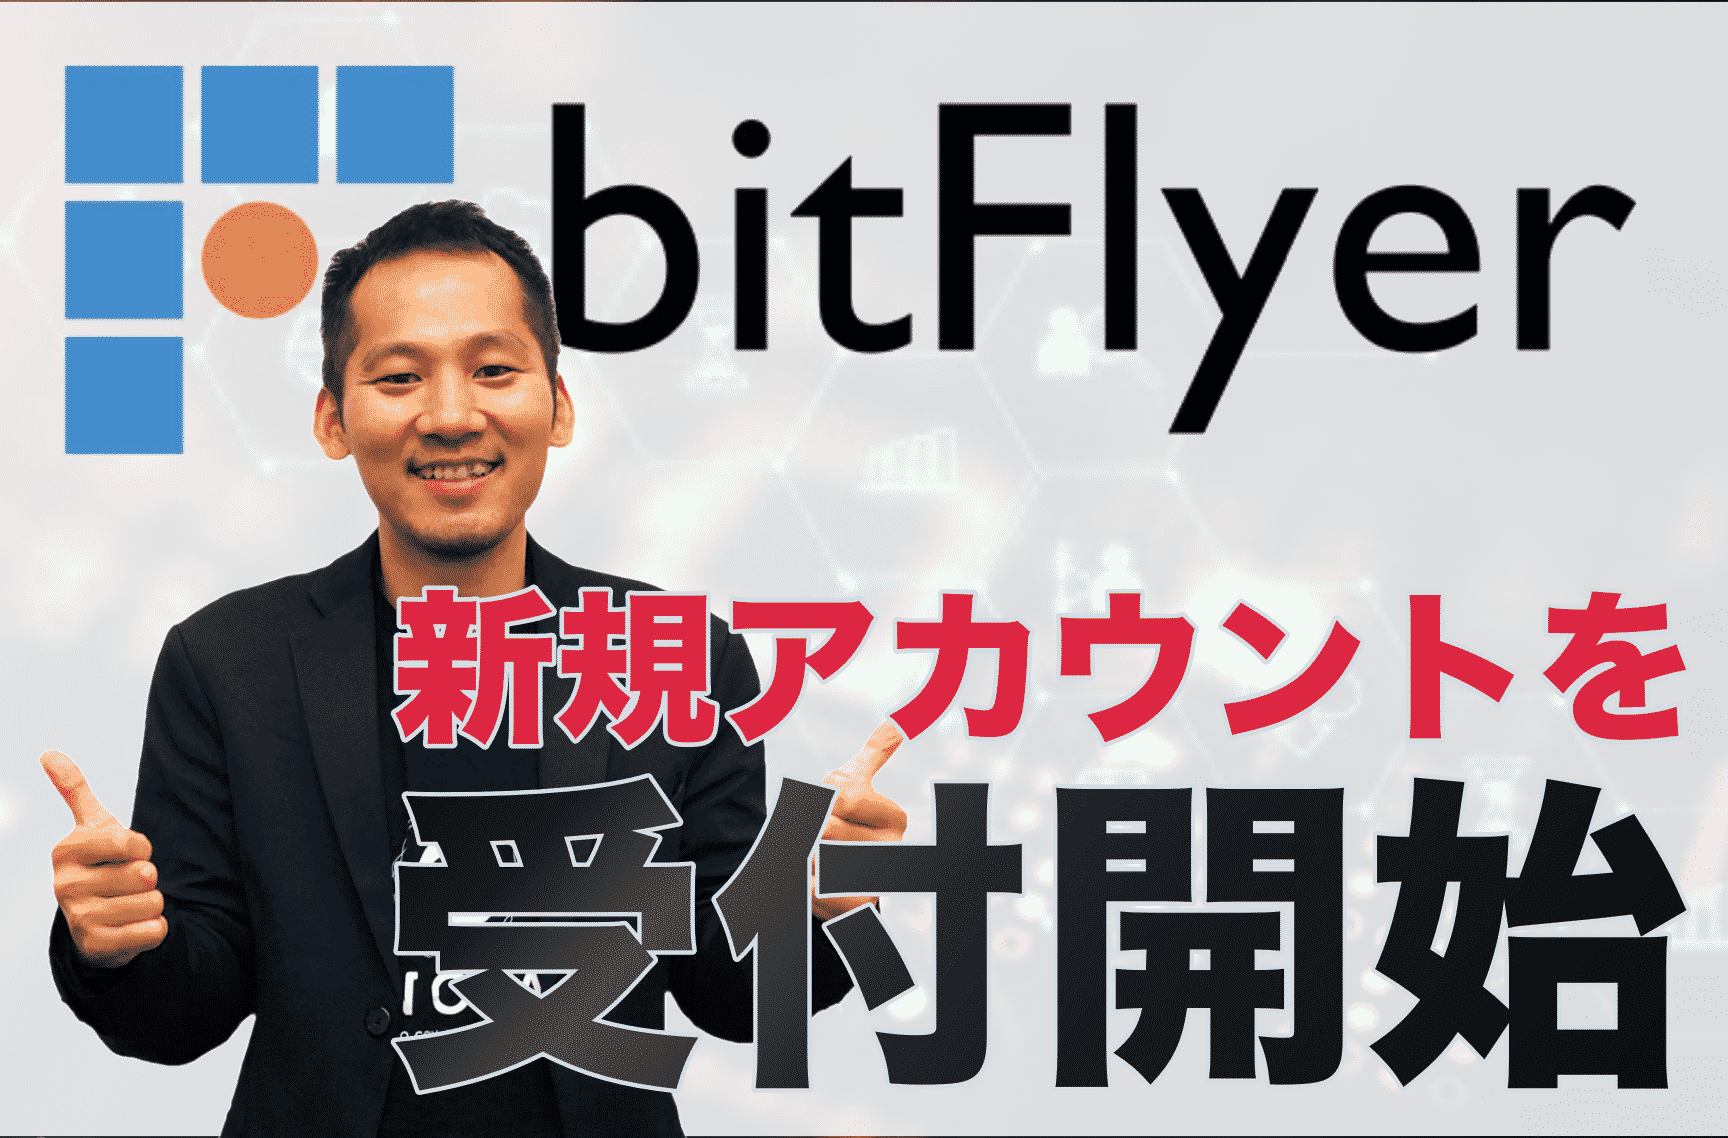 【7月3日放送分】伊藤健次のTwitterLIVE「暗号資産2.0」-BitFlyerが新規アカウントを受付開始-